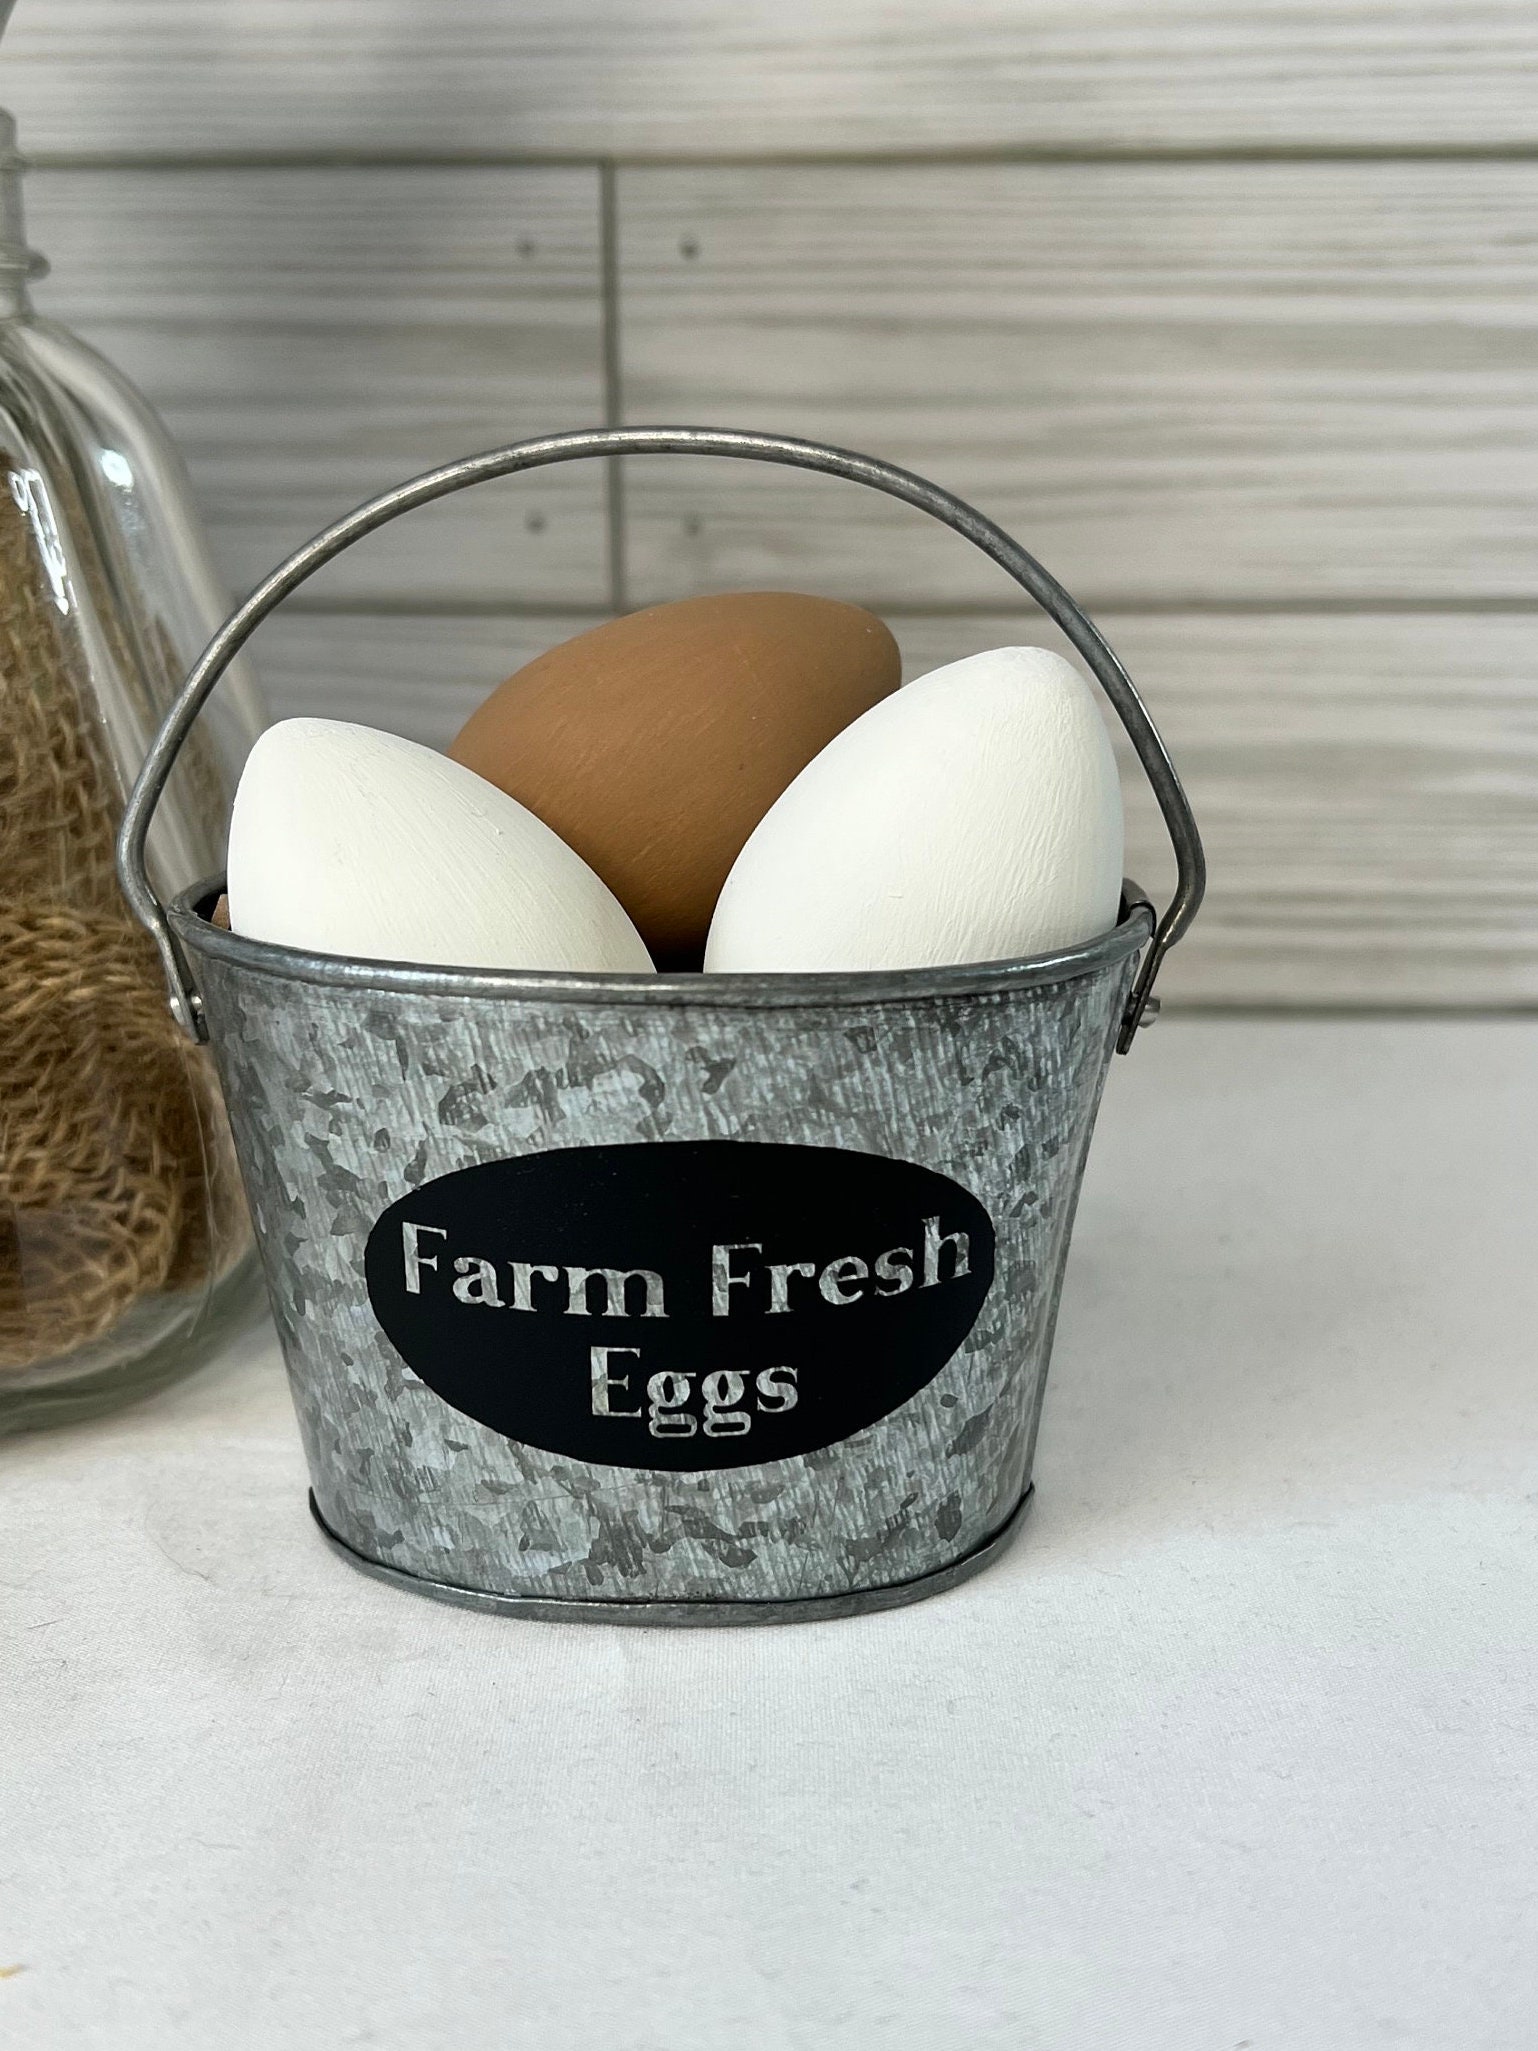 Mini Eggs for Basket 